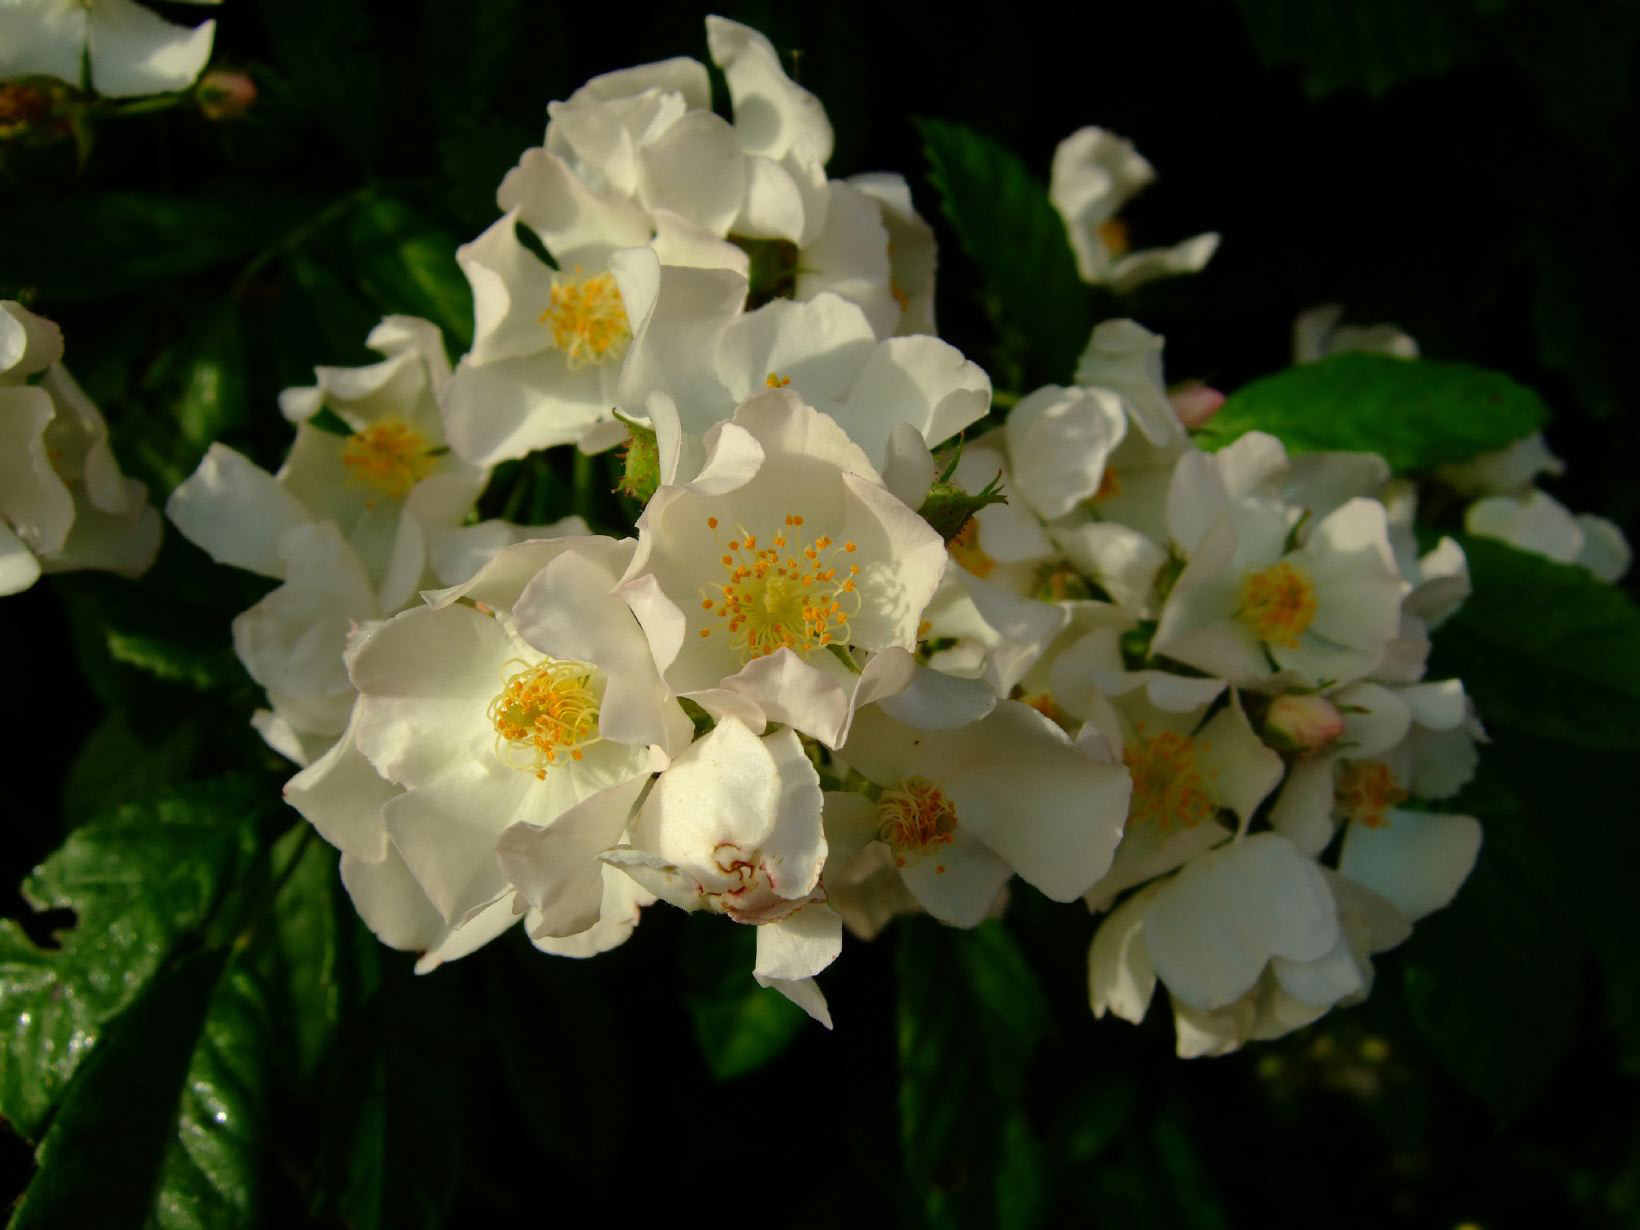 White multiflora rose blooms.